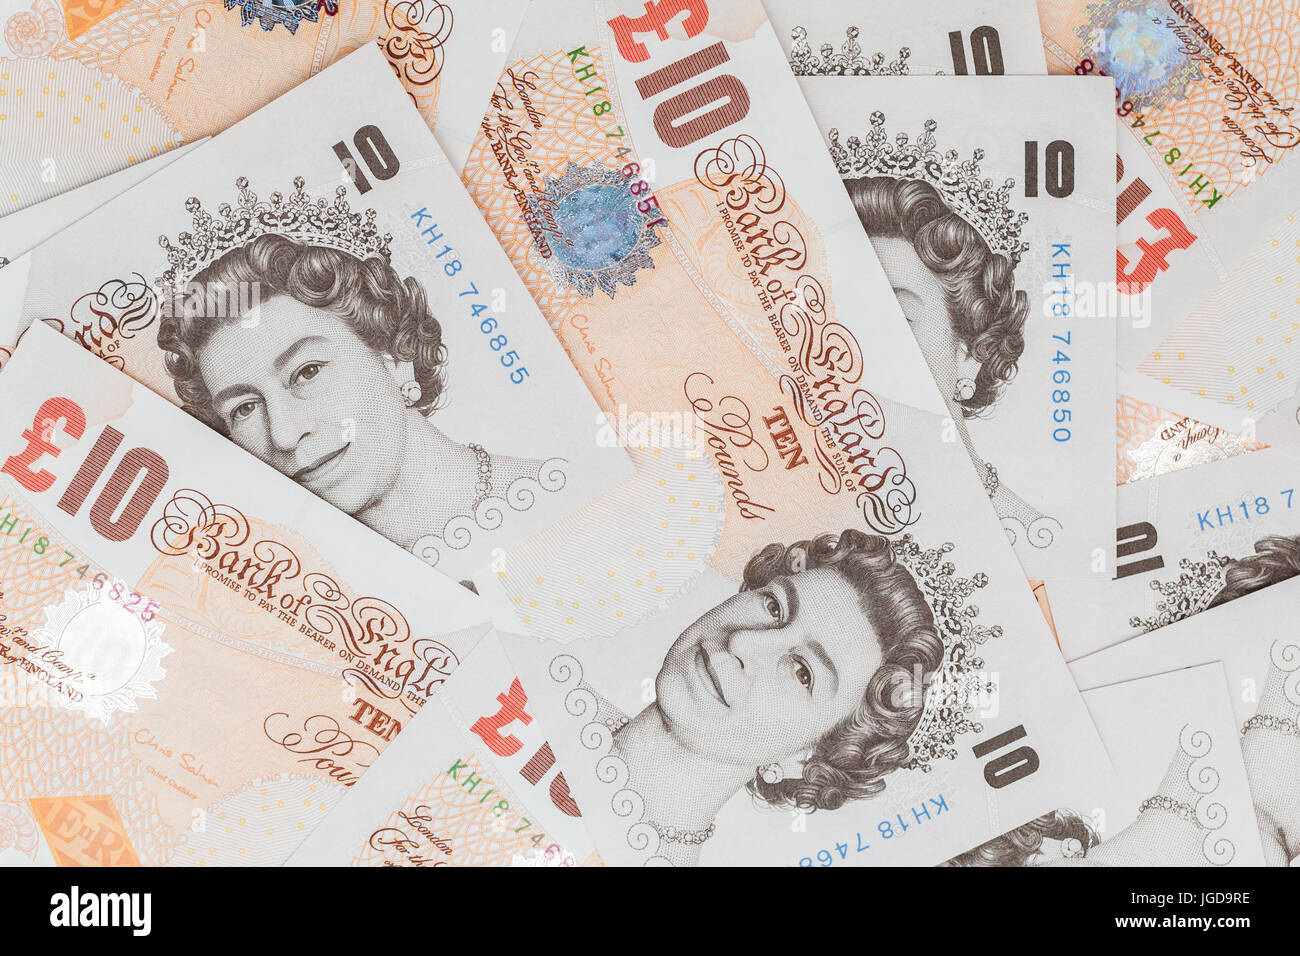 Zehn Pfund-Noten der Bank von England. Hintergrundfoto Stockfoto